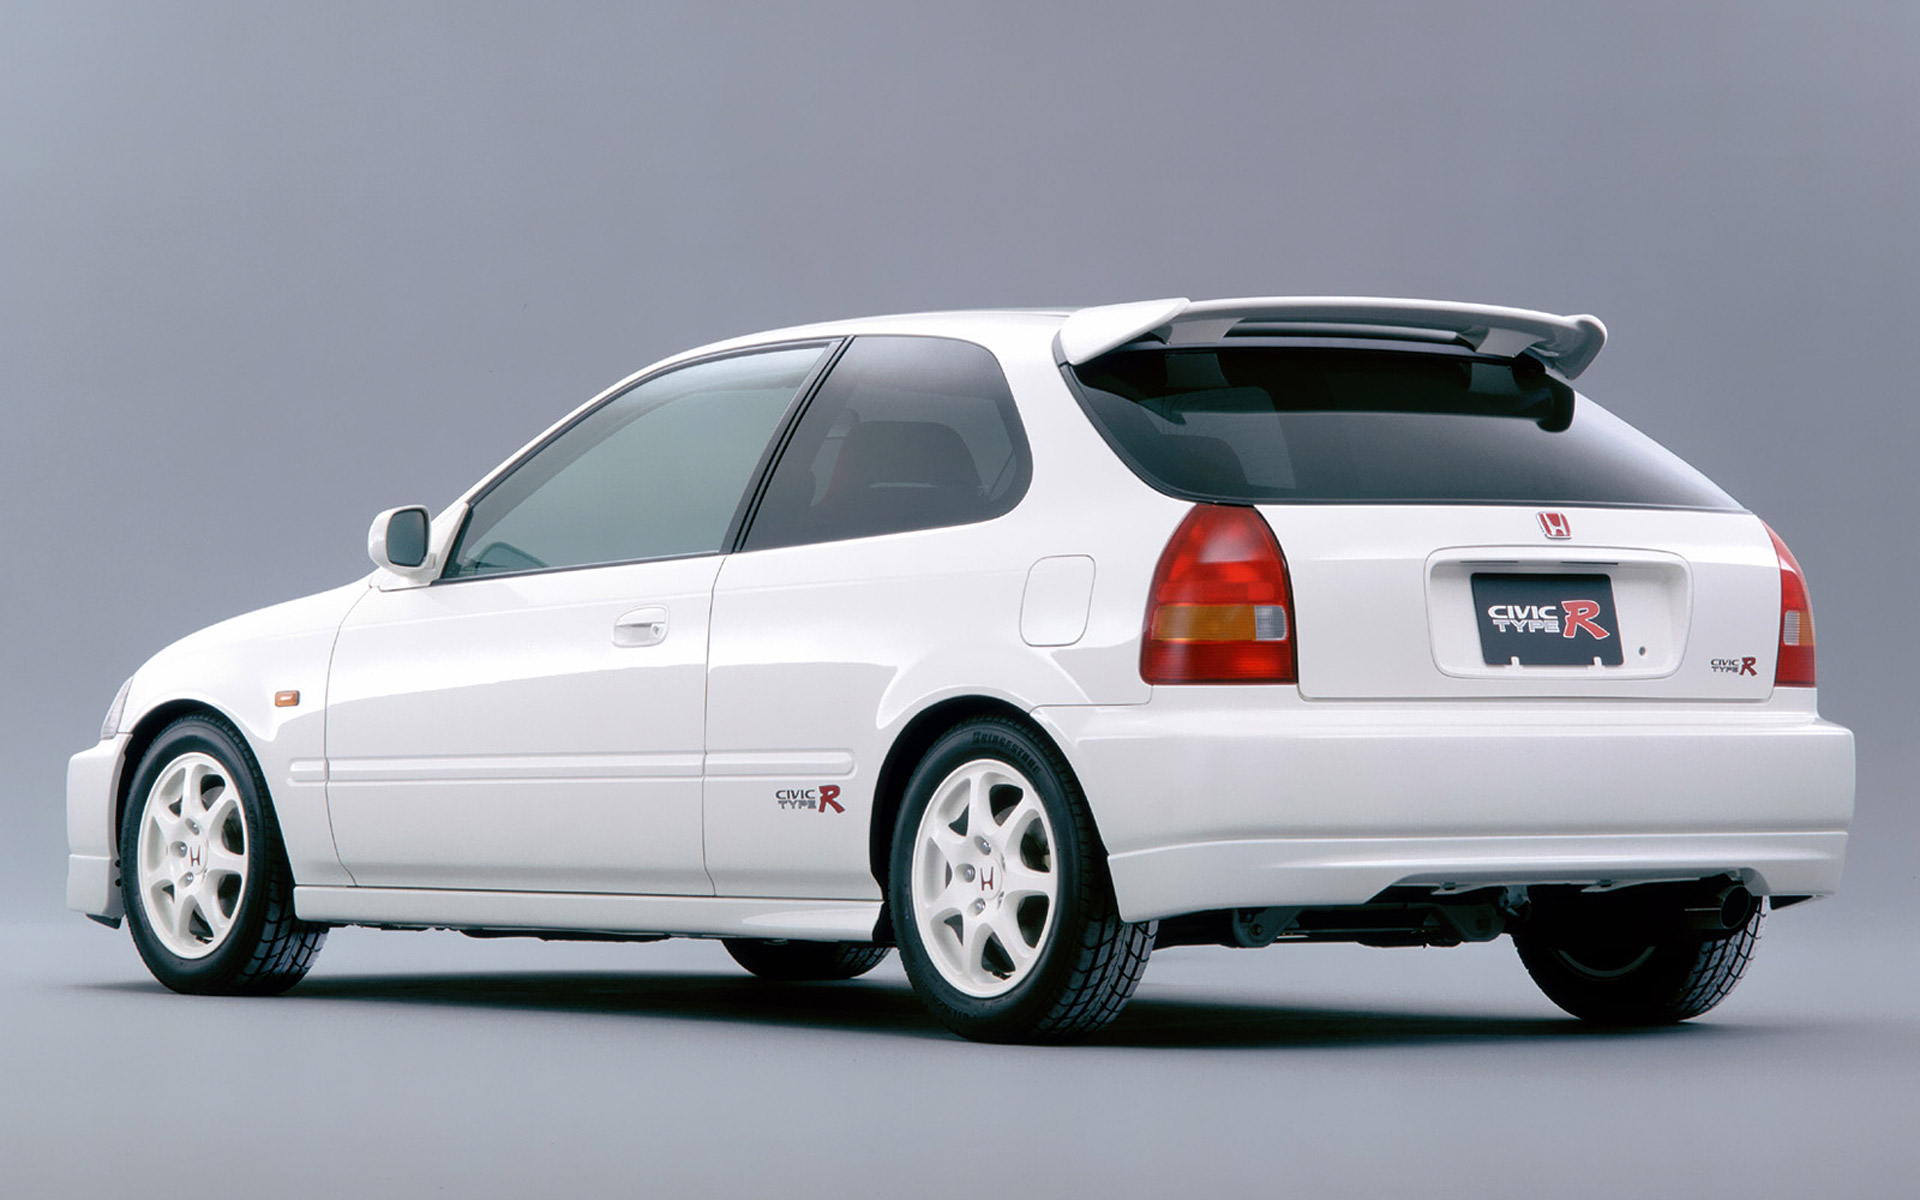  1997 Honda Civic Type R Wallpaper.